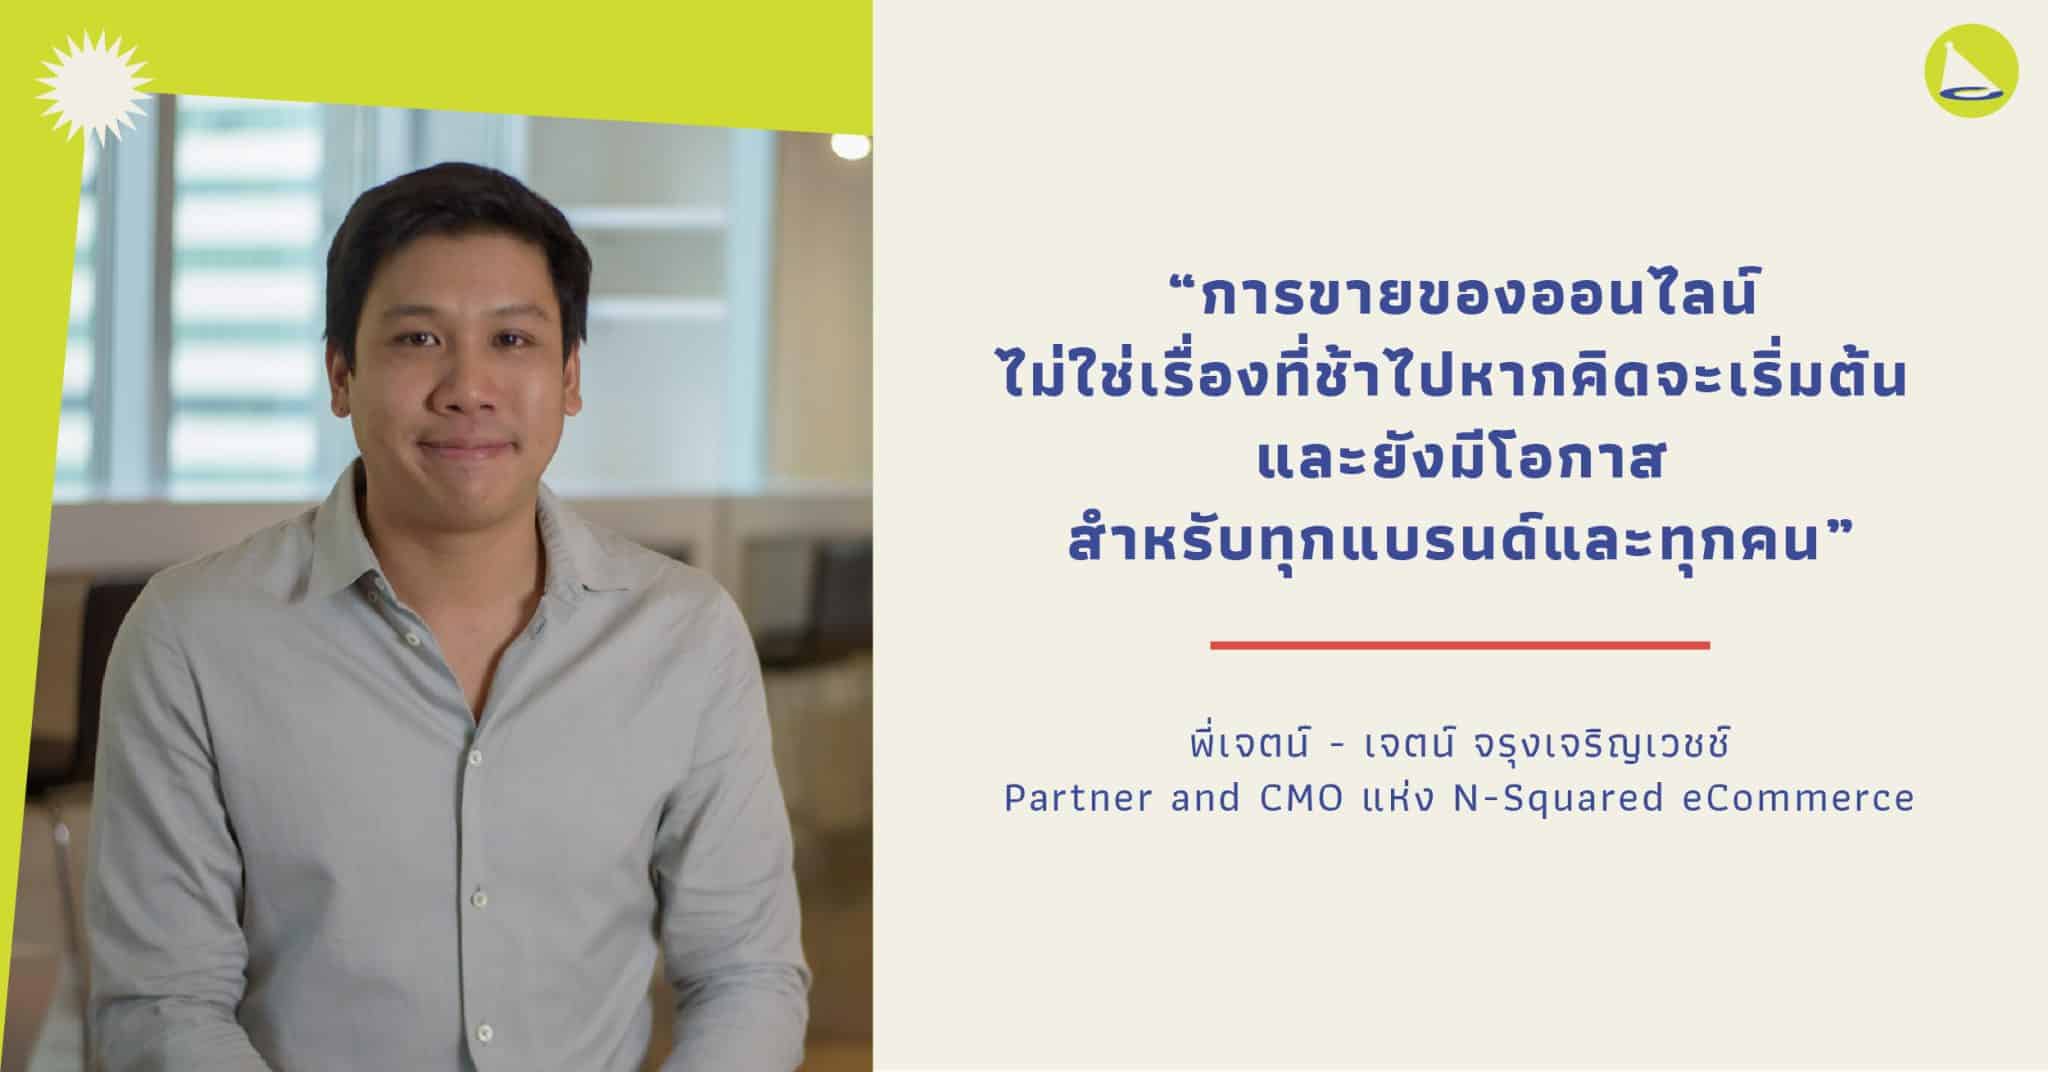 เจตน์ จรุงเจริญเวชช์: CMO แห่ง N-Squared ผู้ปลุกปั้นตลาดช้อปปิ้งออนไลน์ในไทย